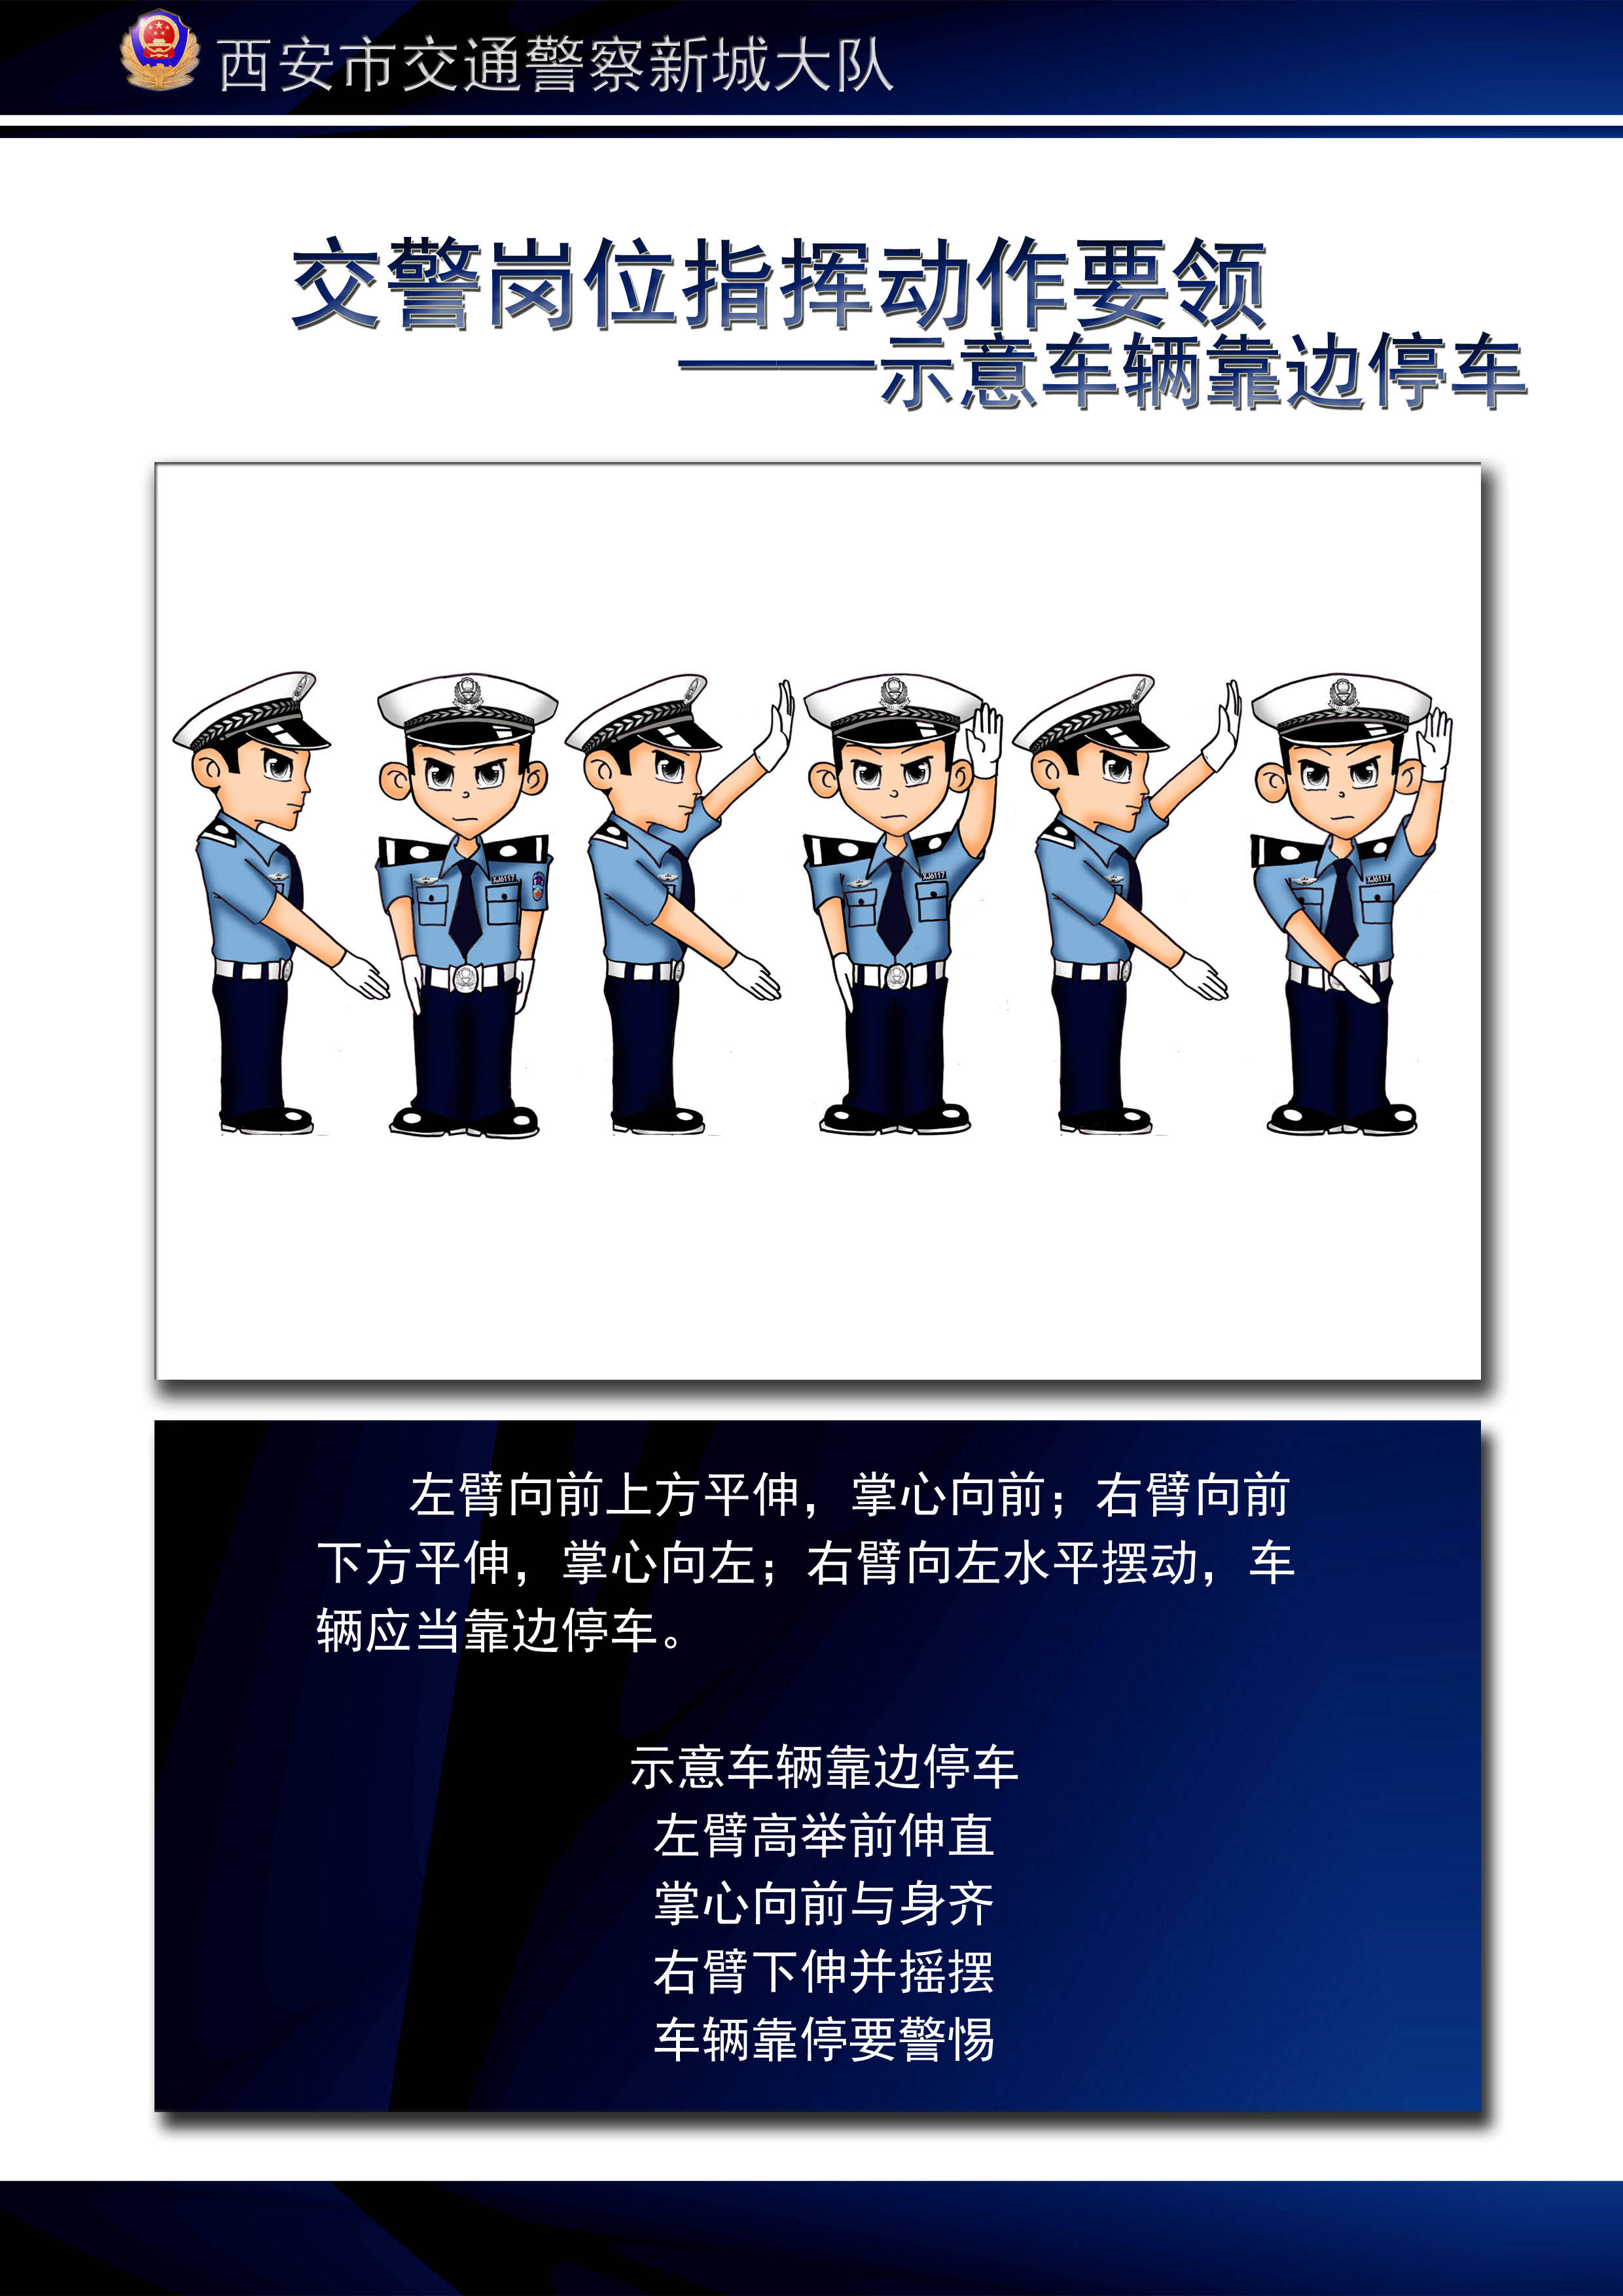 警察手势指挥图有多种图片